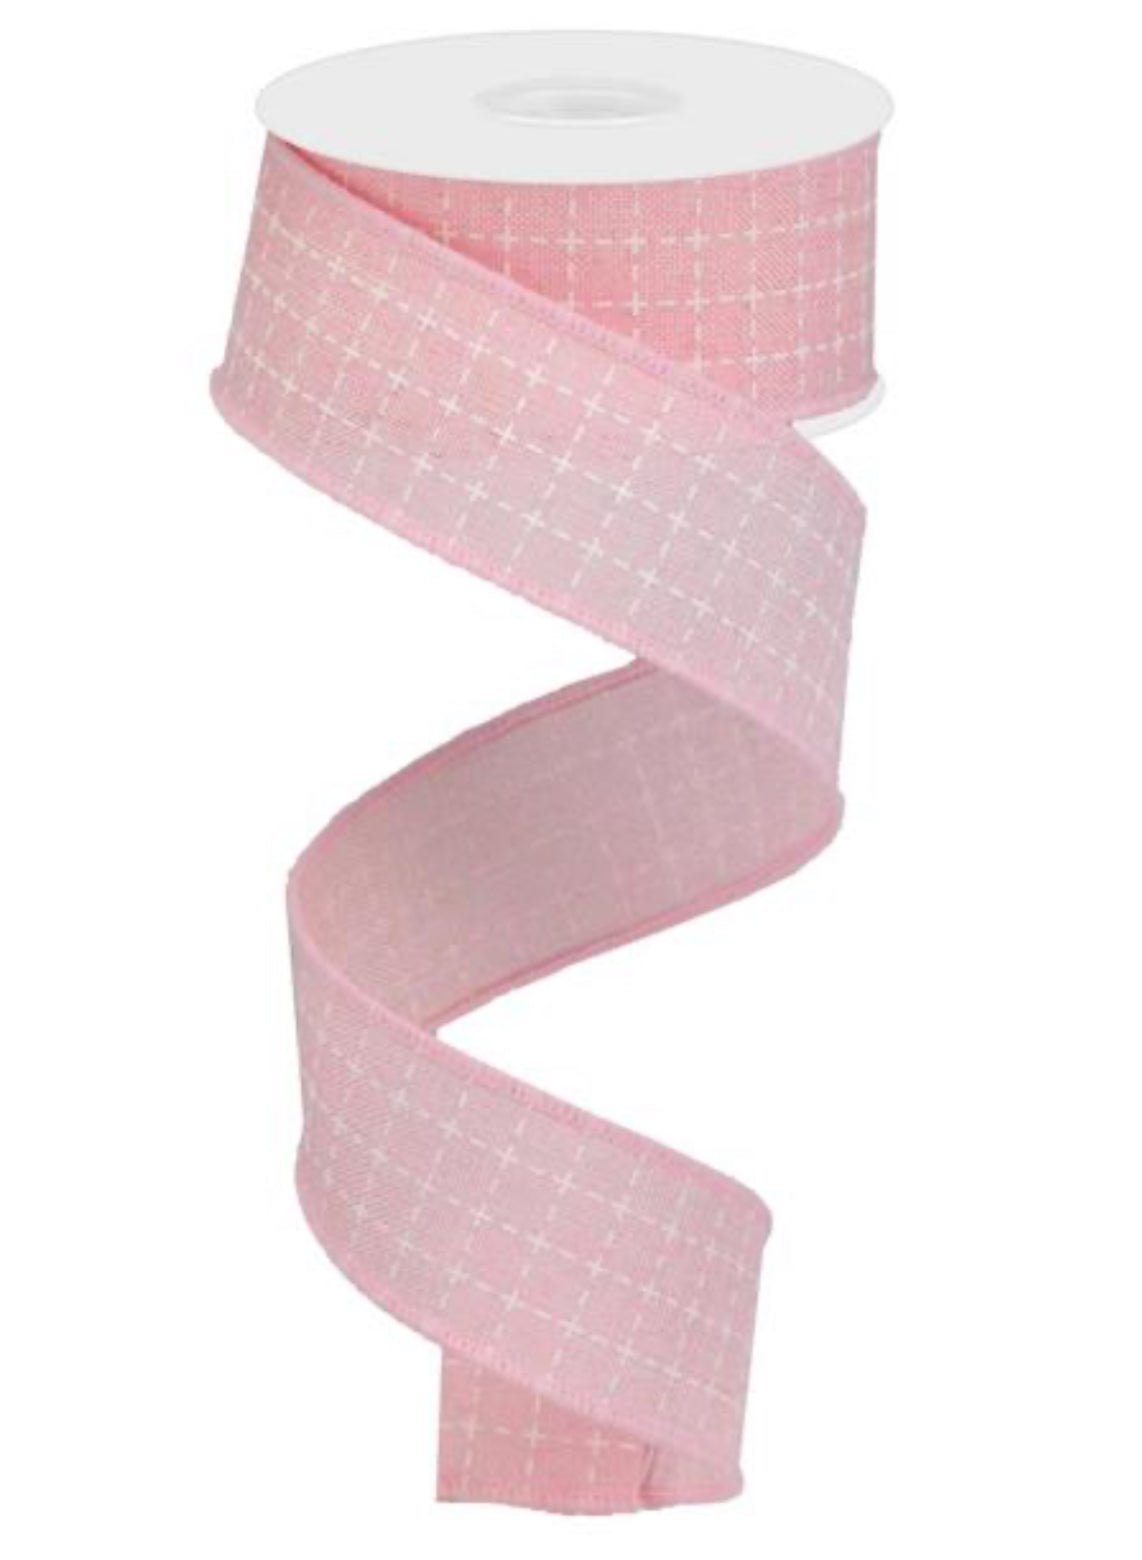 Raised stitch - light pink wired ribbon - 1.5” - Greenery MarketWired ribbonRG01677FA